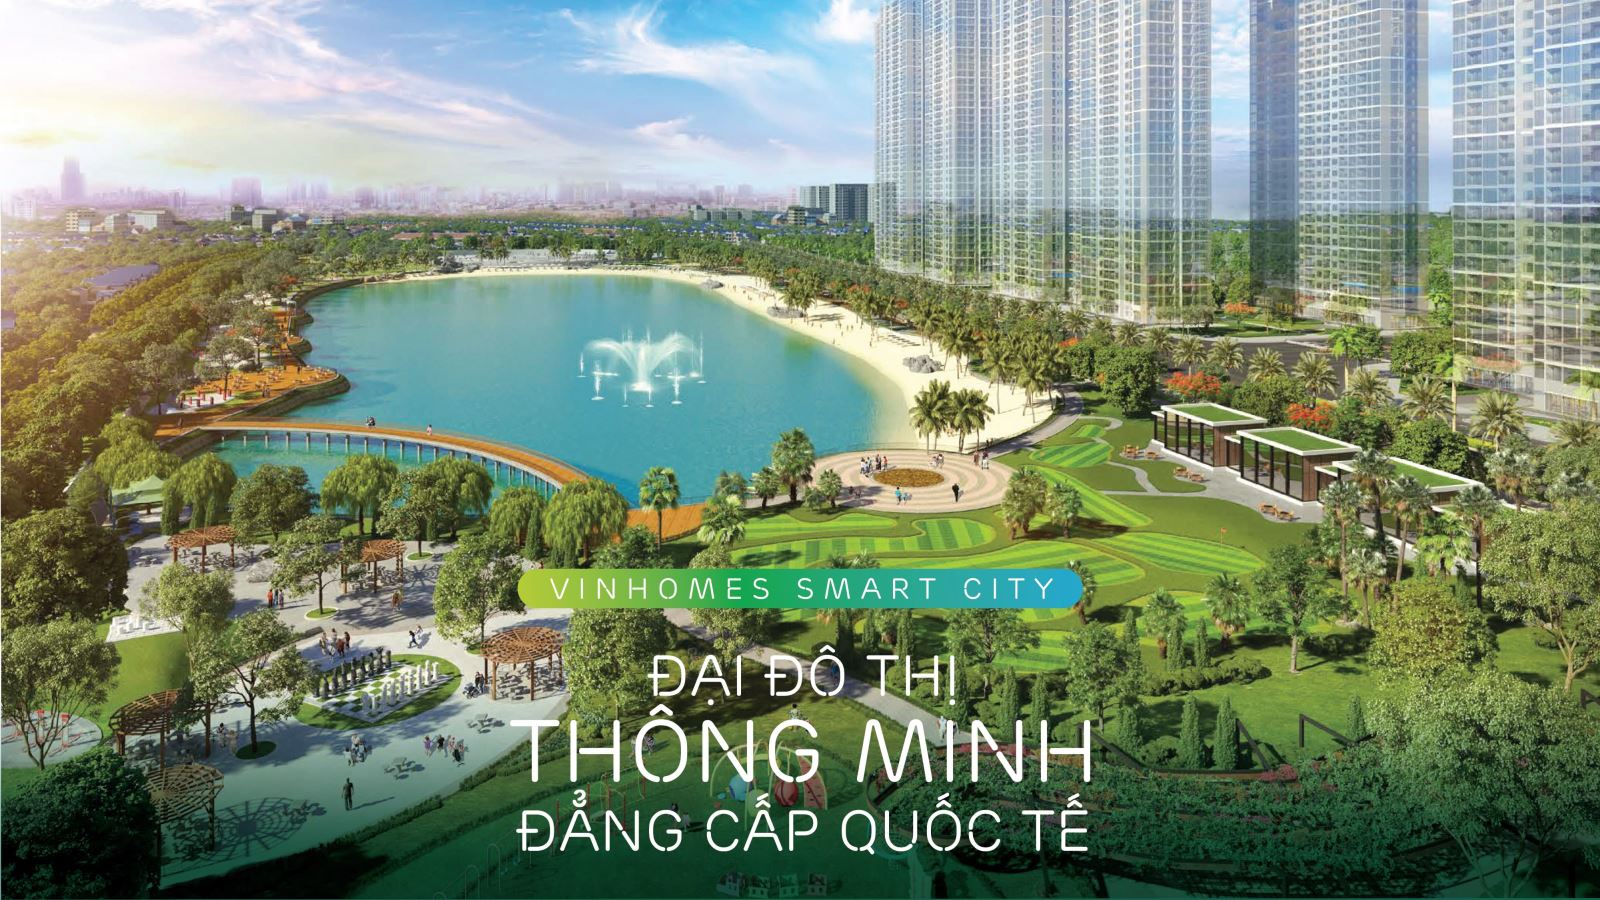 Vinhomes Smart City - Đại đô thị thông minh đầu tiên giữa long Hà Nội